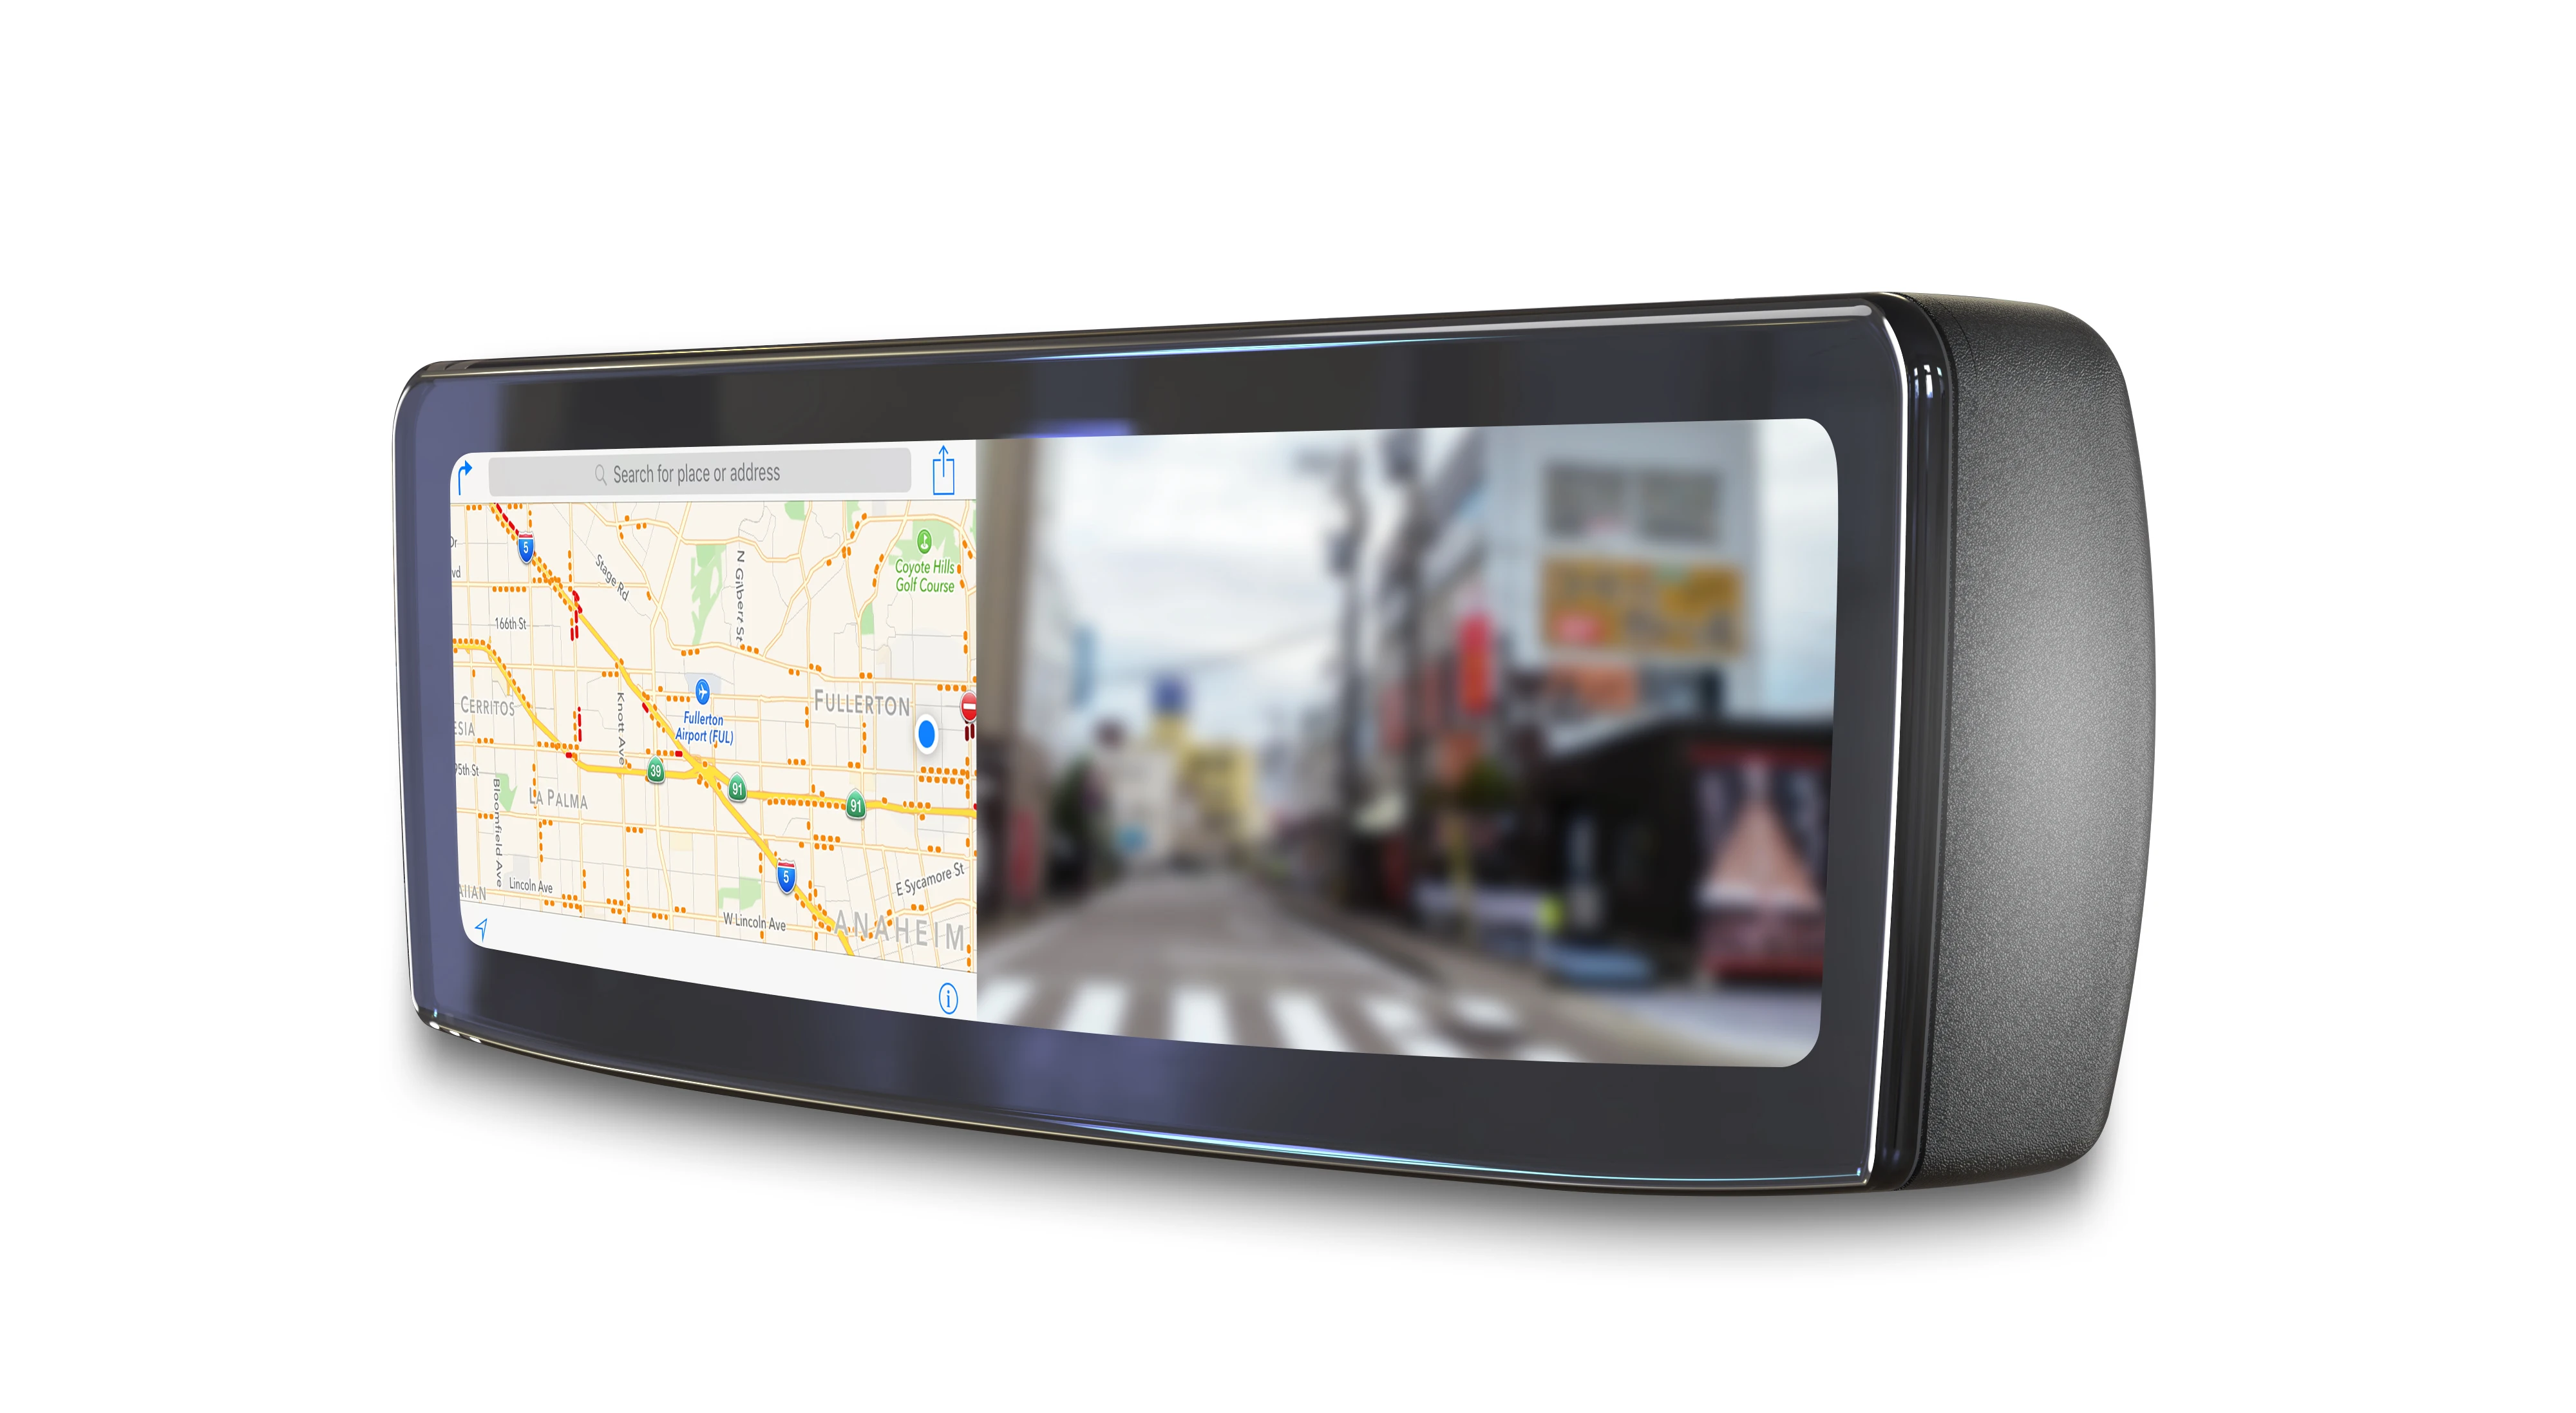 4 3 Lcdミラーモニターリアビューカメラディスプレイgpsナビゲーションミラーリングusbワイヤーでandroid Iphoneでwazegoogleマップを操作 Buy Gps ナビゲーションミラーリング Waze Google 地図ナビゲーション 電動バックミラー Product On Alibaba Com